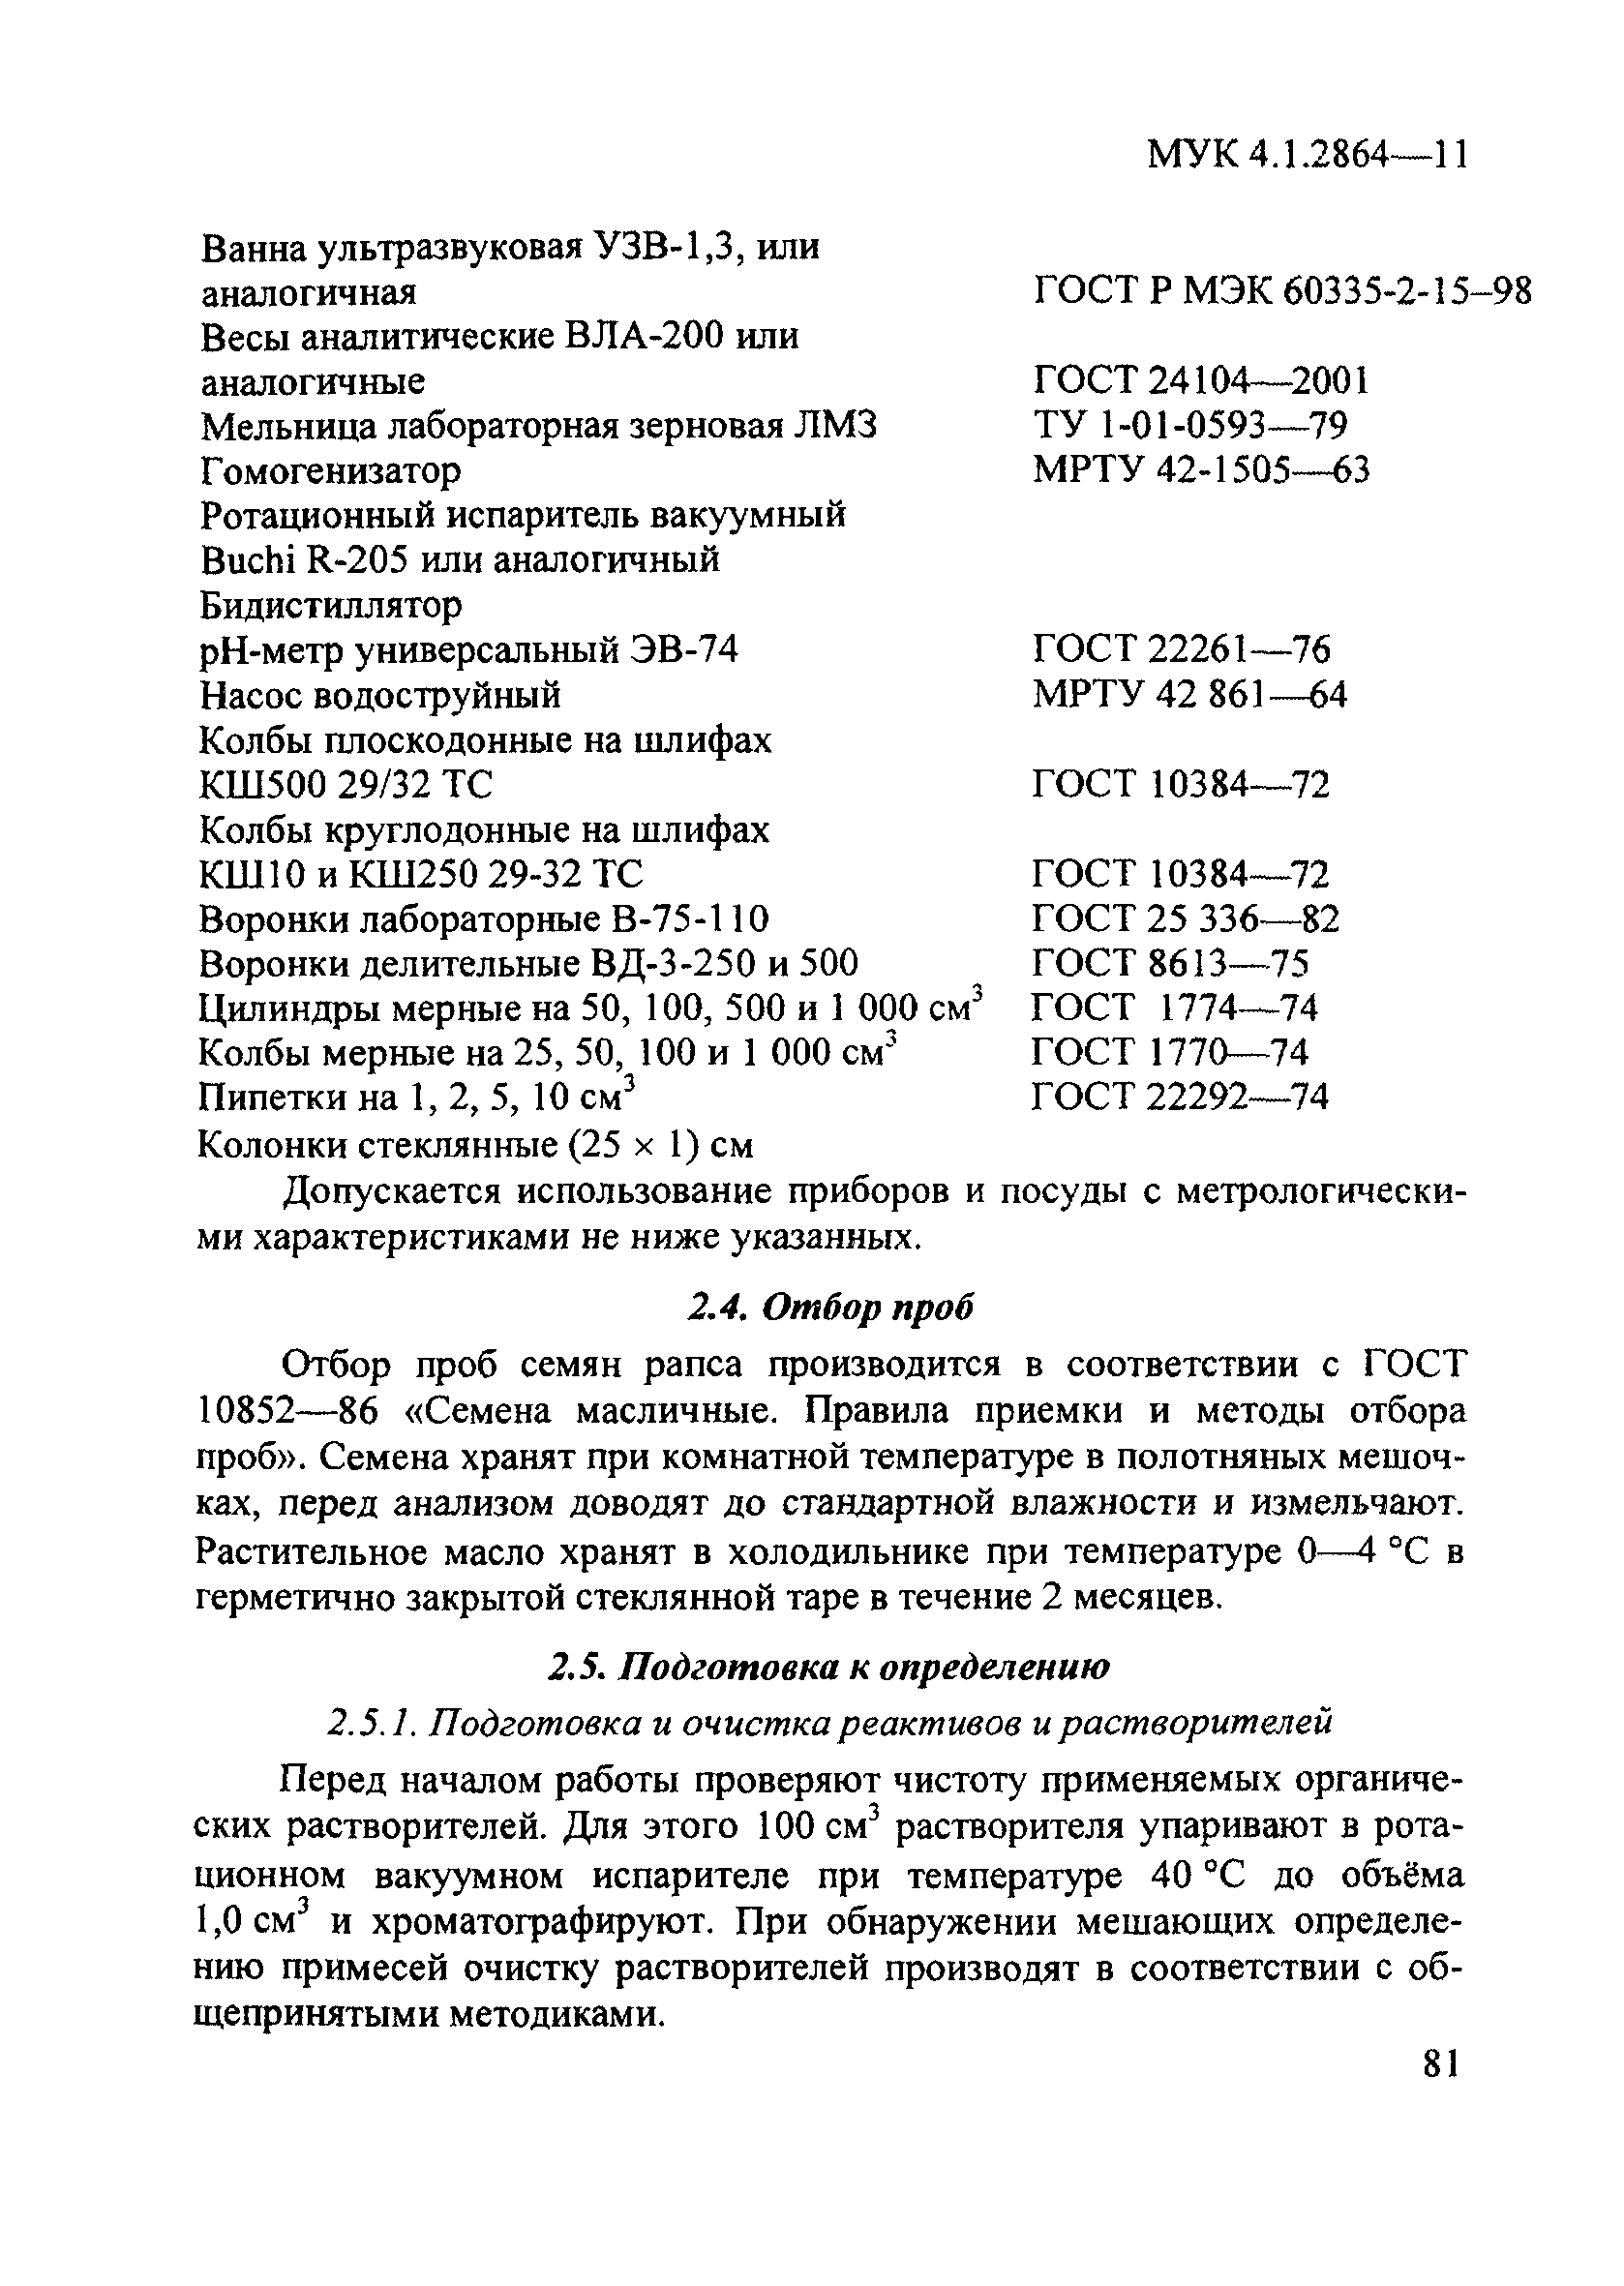 МУК 4.1.2864-11